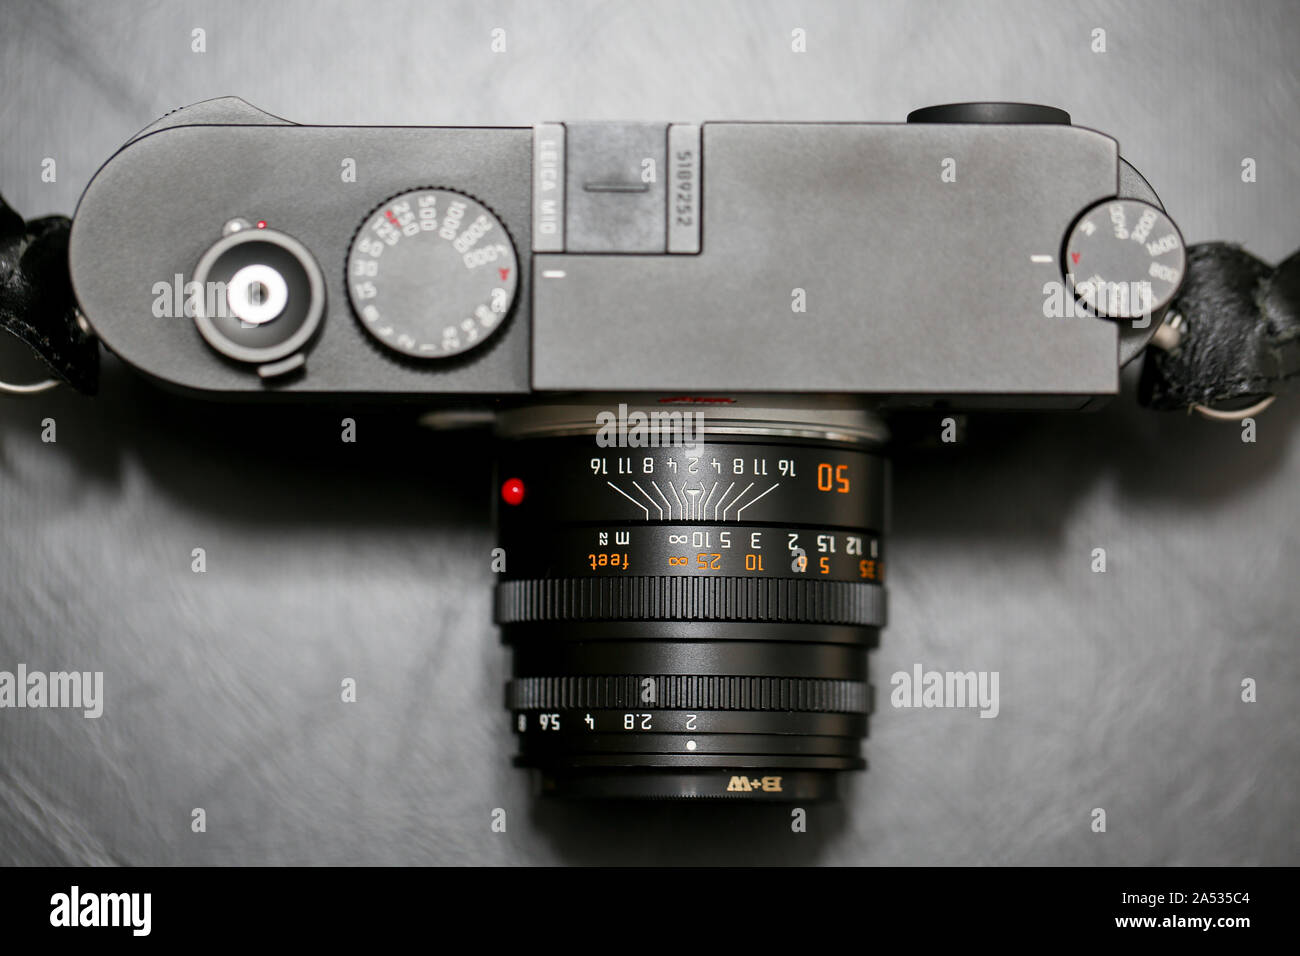 Princeton, New Jersey, 17. Oktober 2019: Leica M 10 silber auf schwarzem Hintergrund. - Bild Stockfoto